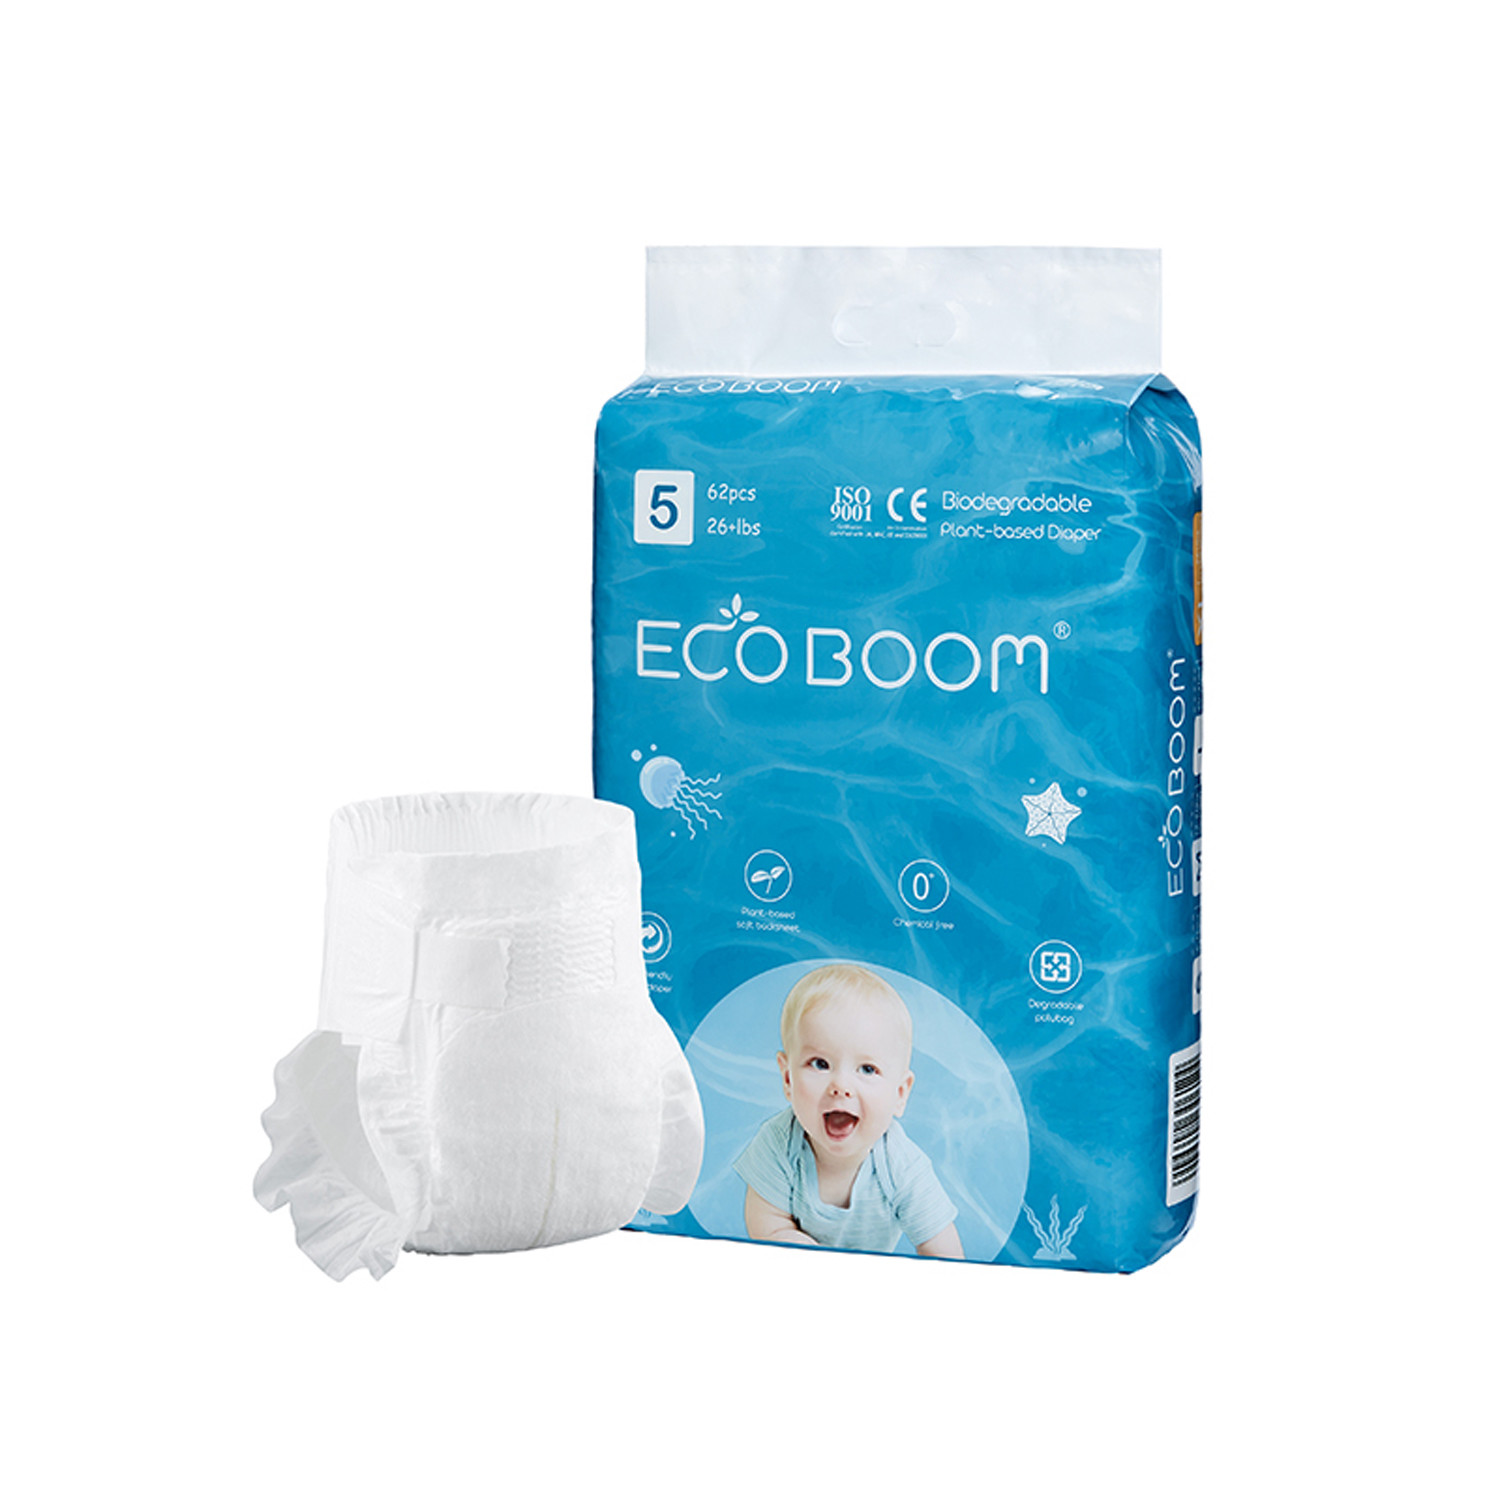 Подгузники ECO BOOM органические детские размер XL больше 12 кг, 62 шт. MKEB20011-XL